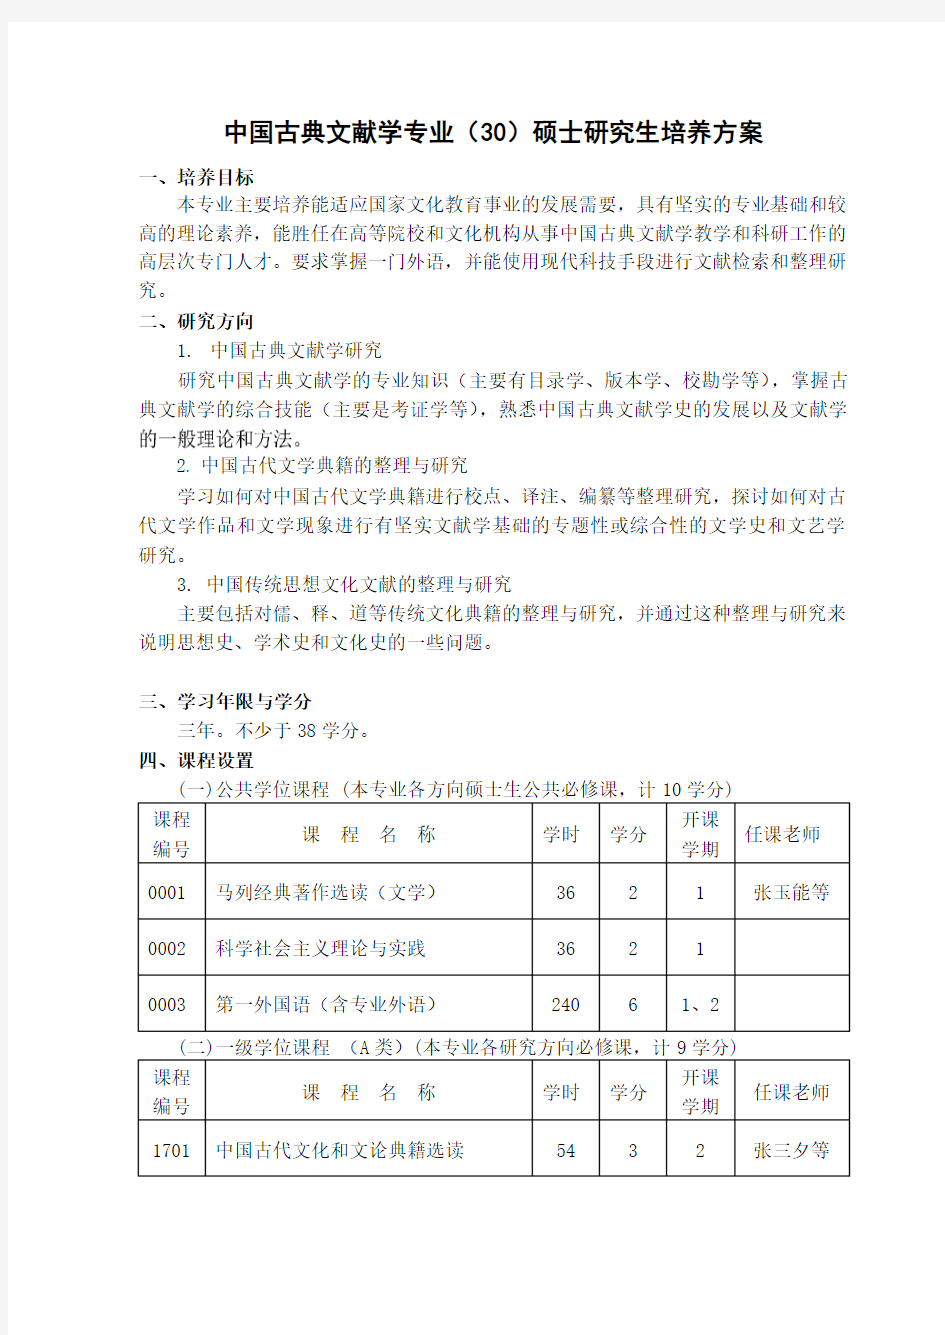 中国古典文献学专业(30)硕士研究生培养方案